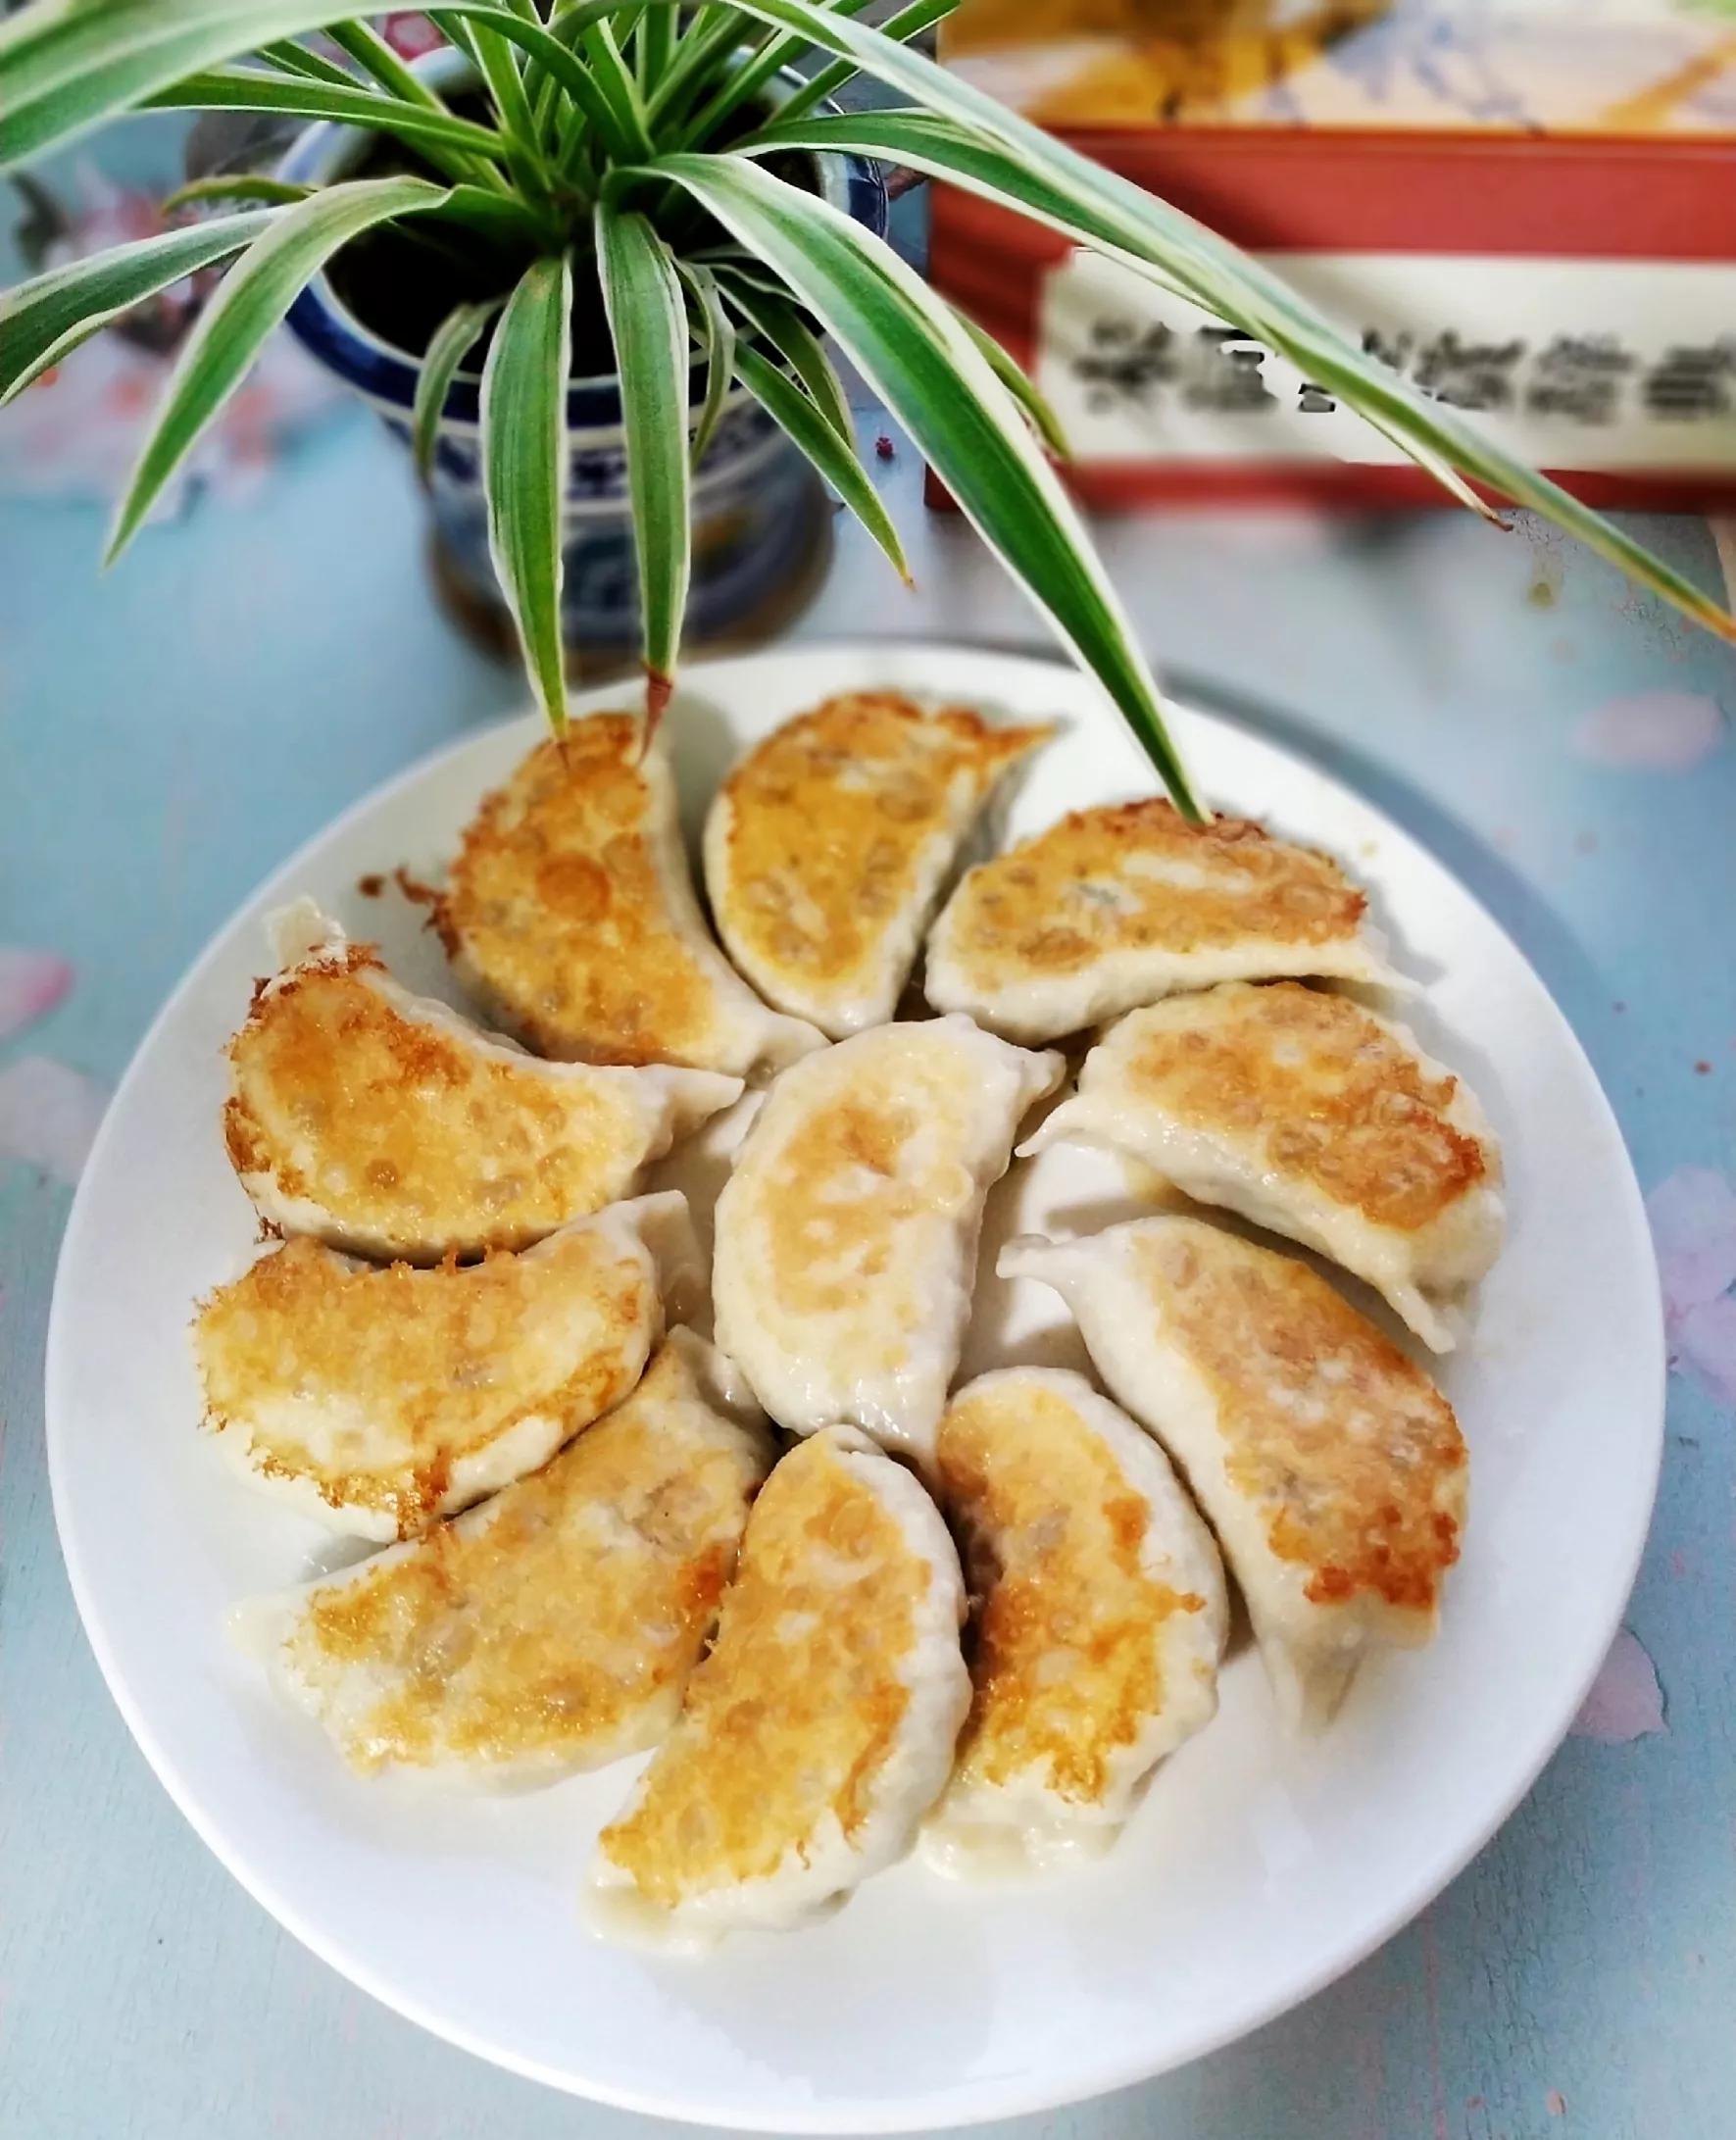 饺子好吃的做法,上锅煎一煎,从此早餐告别单调,口味变的丰滿